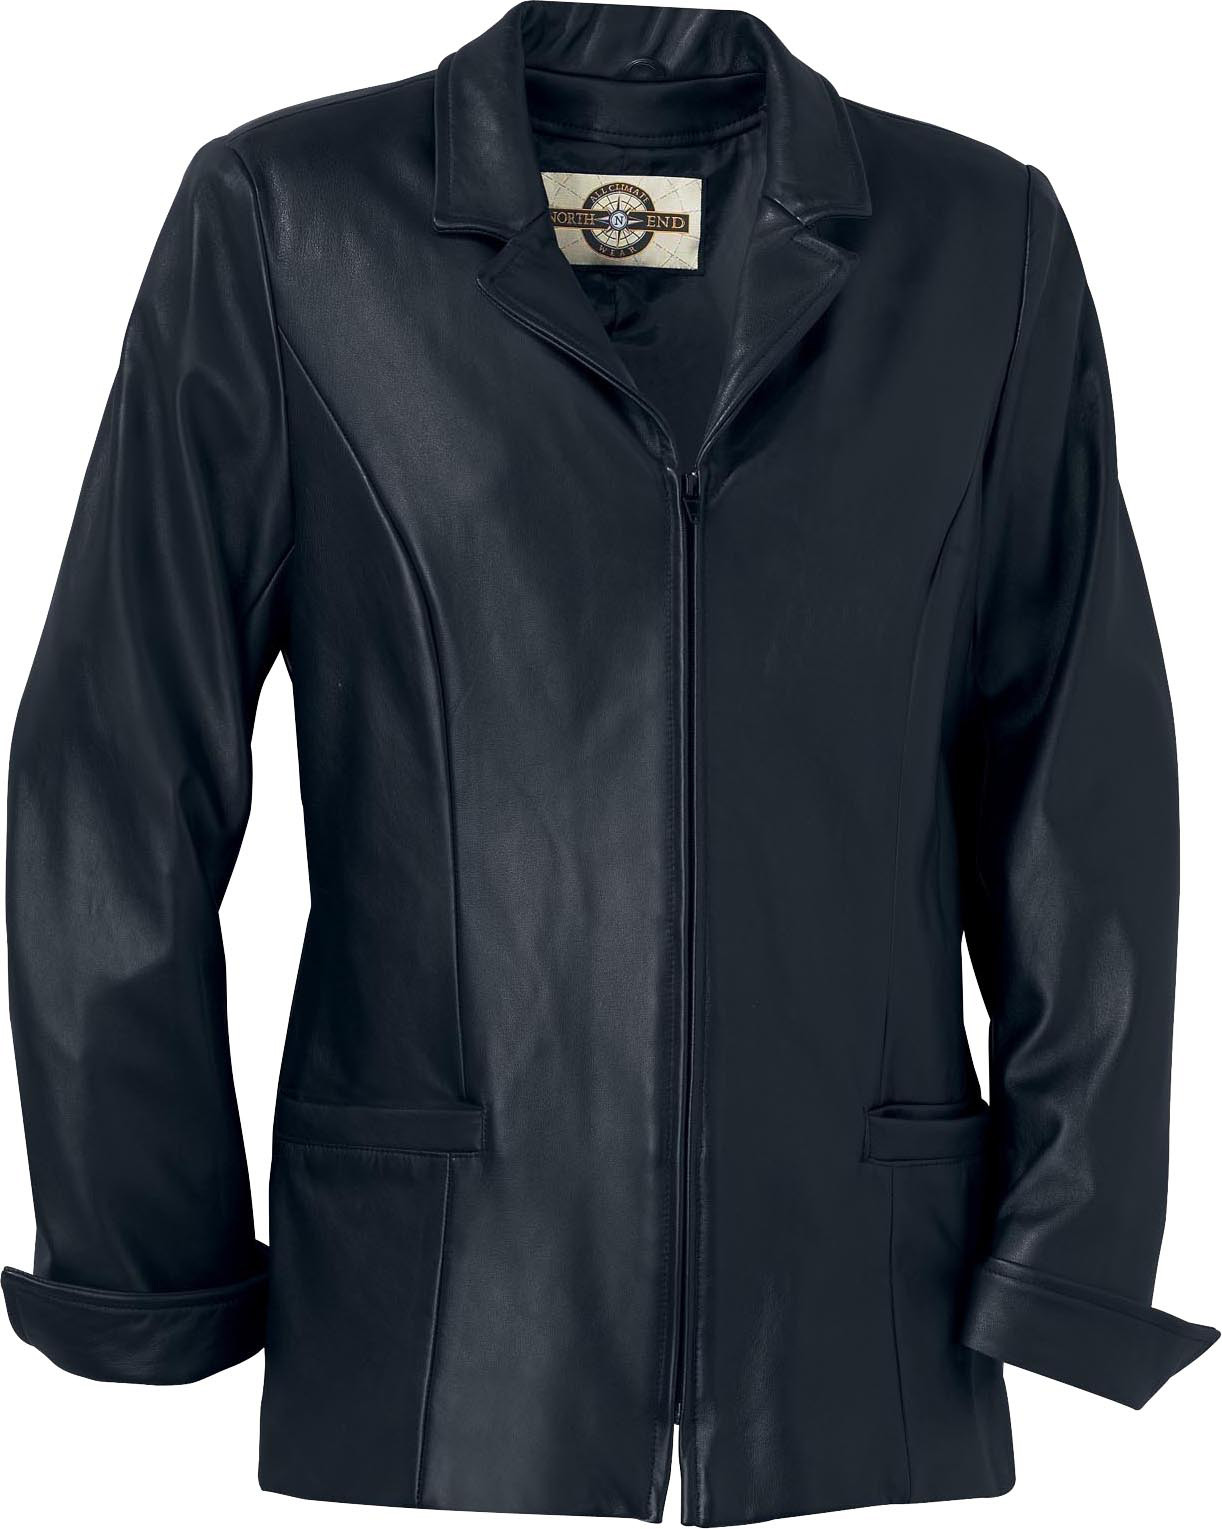 Ash City UTK 1 Warm.Logik 78040 - Ladies' Leather Hip Length Jacket